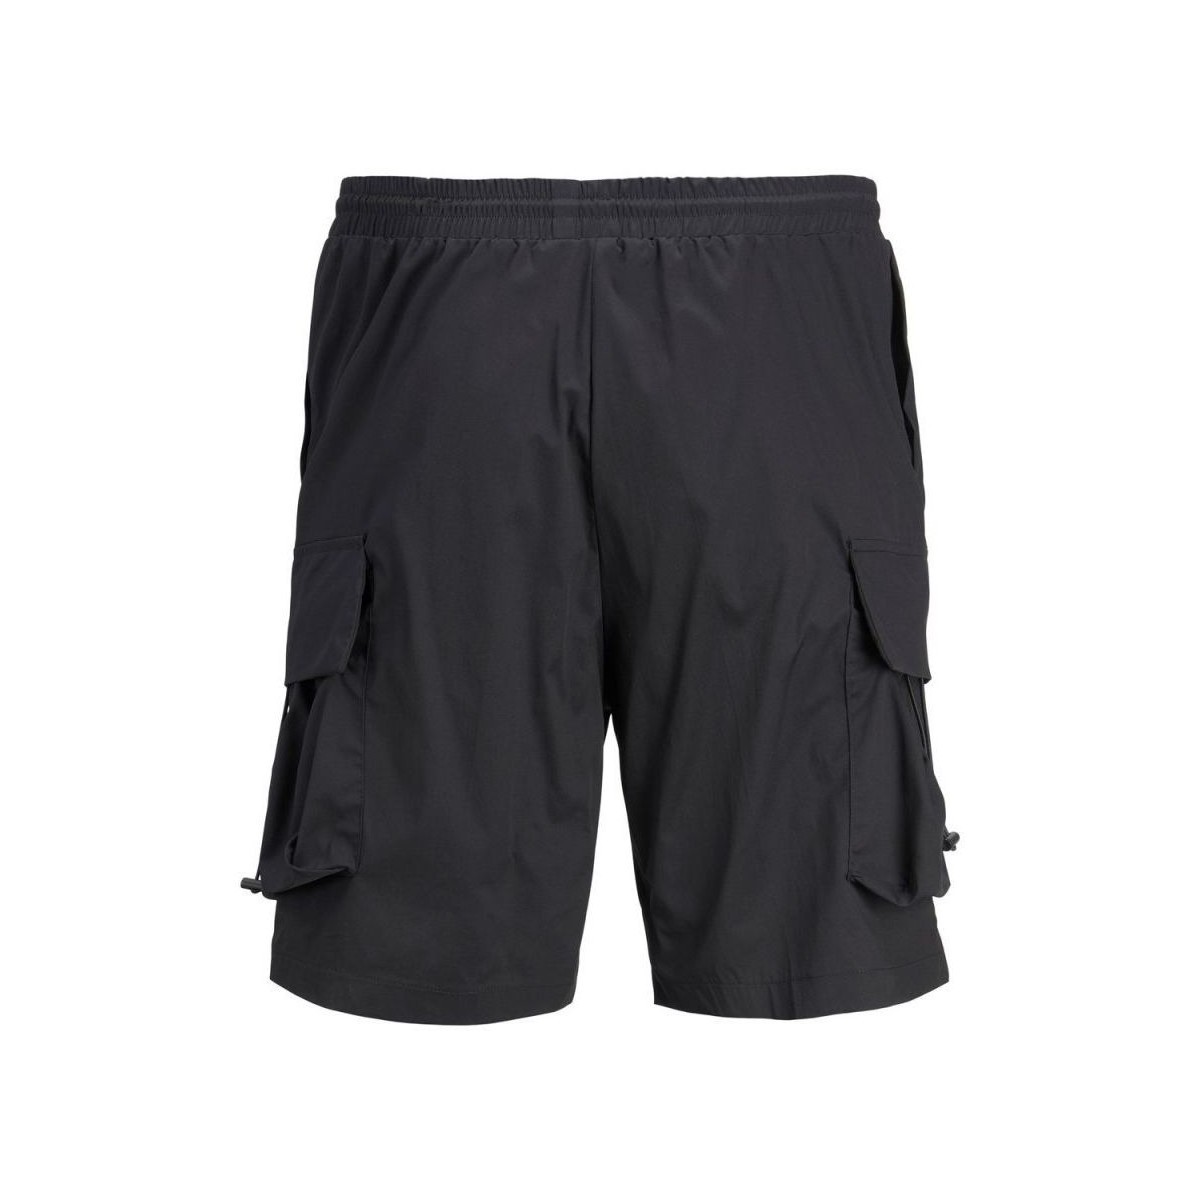 Vêtements Homme Shorts / Bermudas Jack & Jones 12205530 ROCKET-BLACK Noir